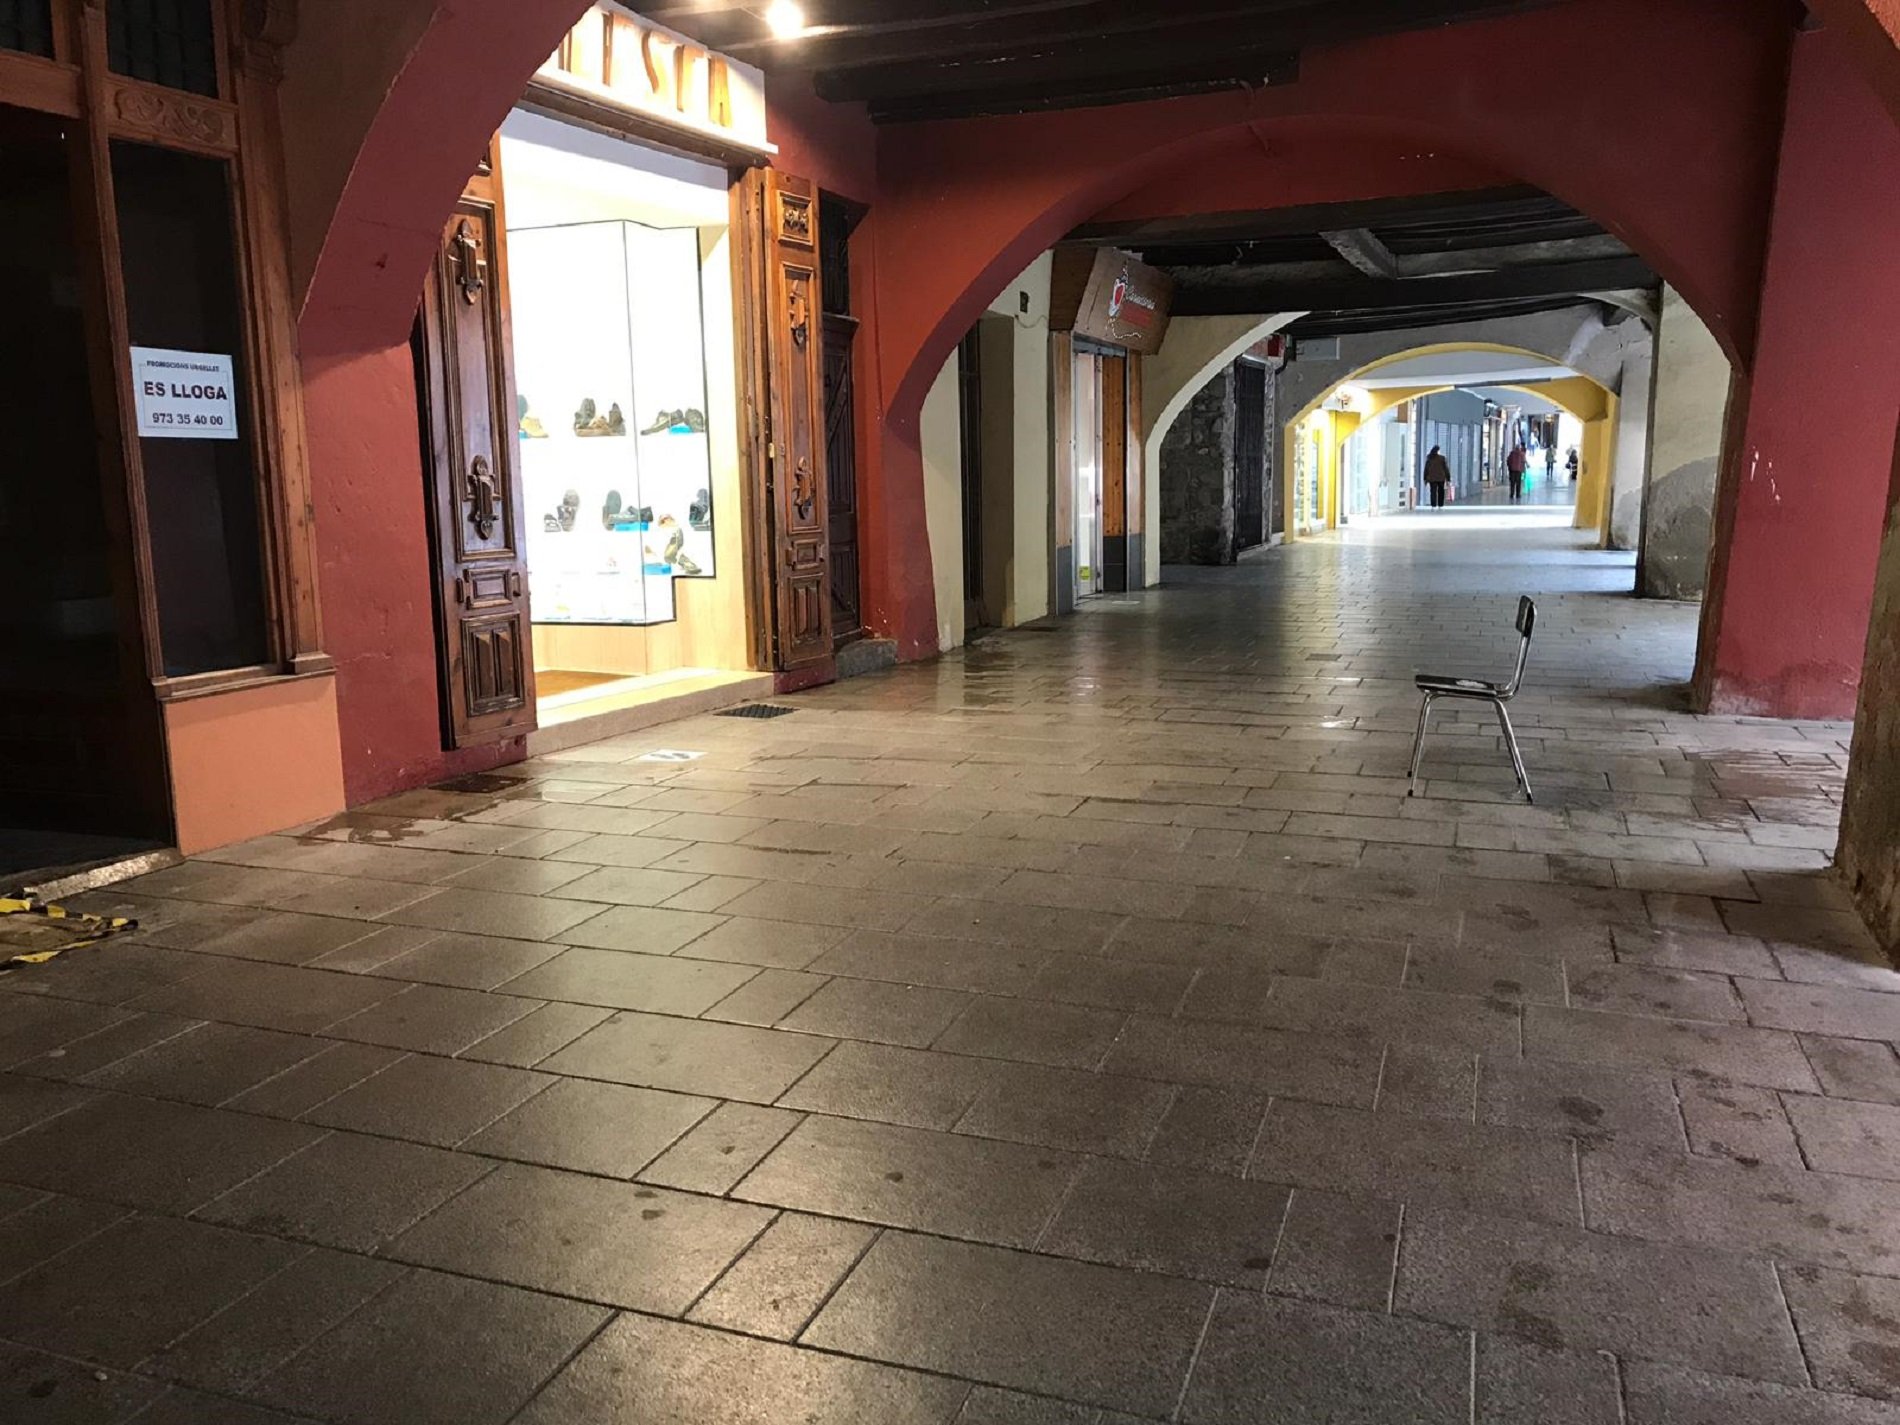 Arranca la fase 1: Apertura tímida de terrazas y comercios en la Seu d'Urgell